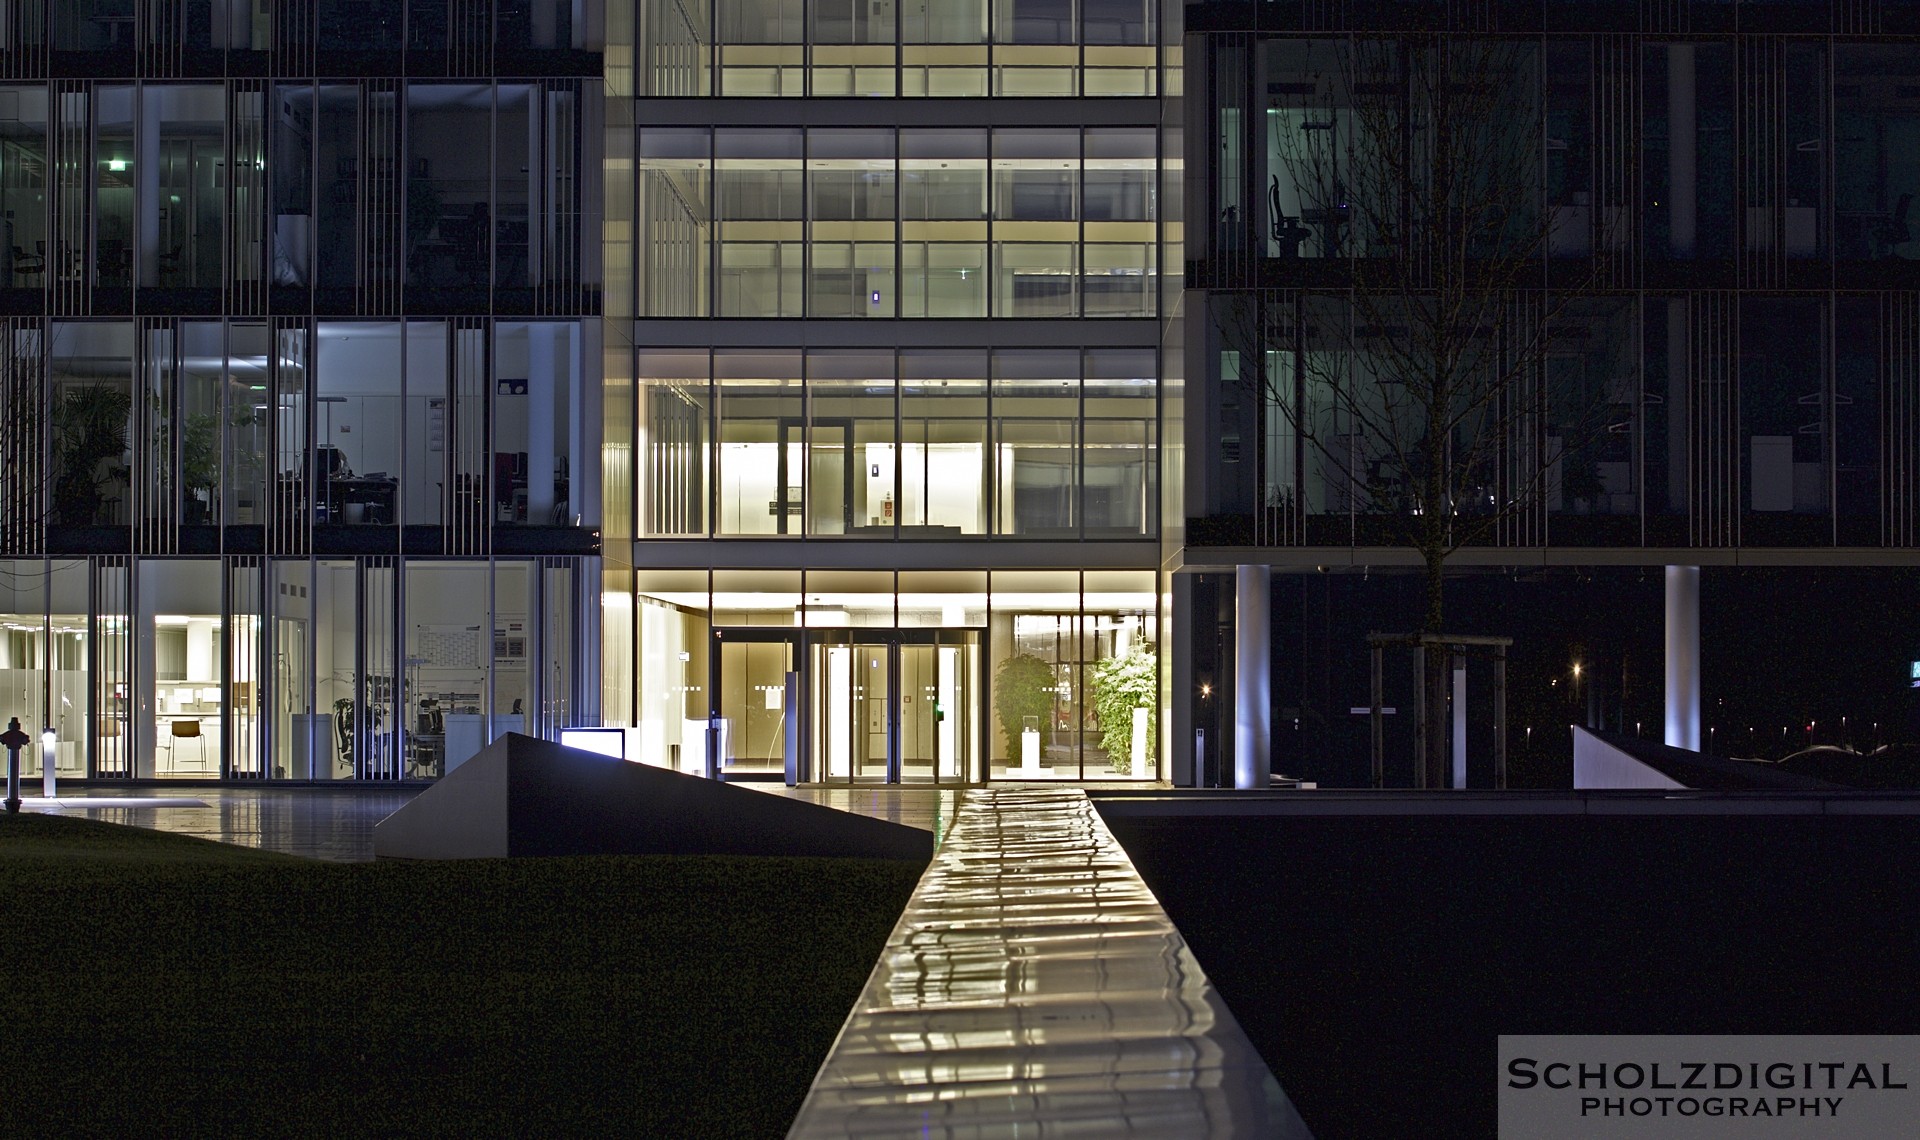 Nachtaufnahme im ThyssenKrupp Quartier in Essen